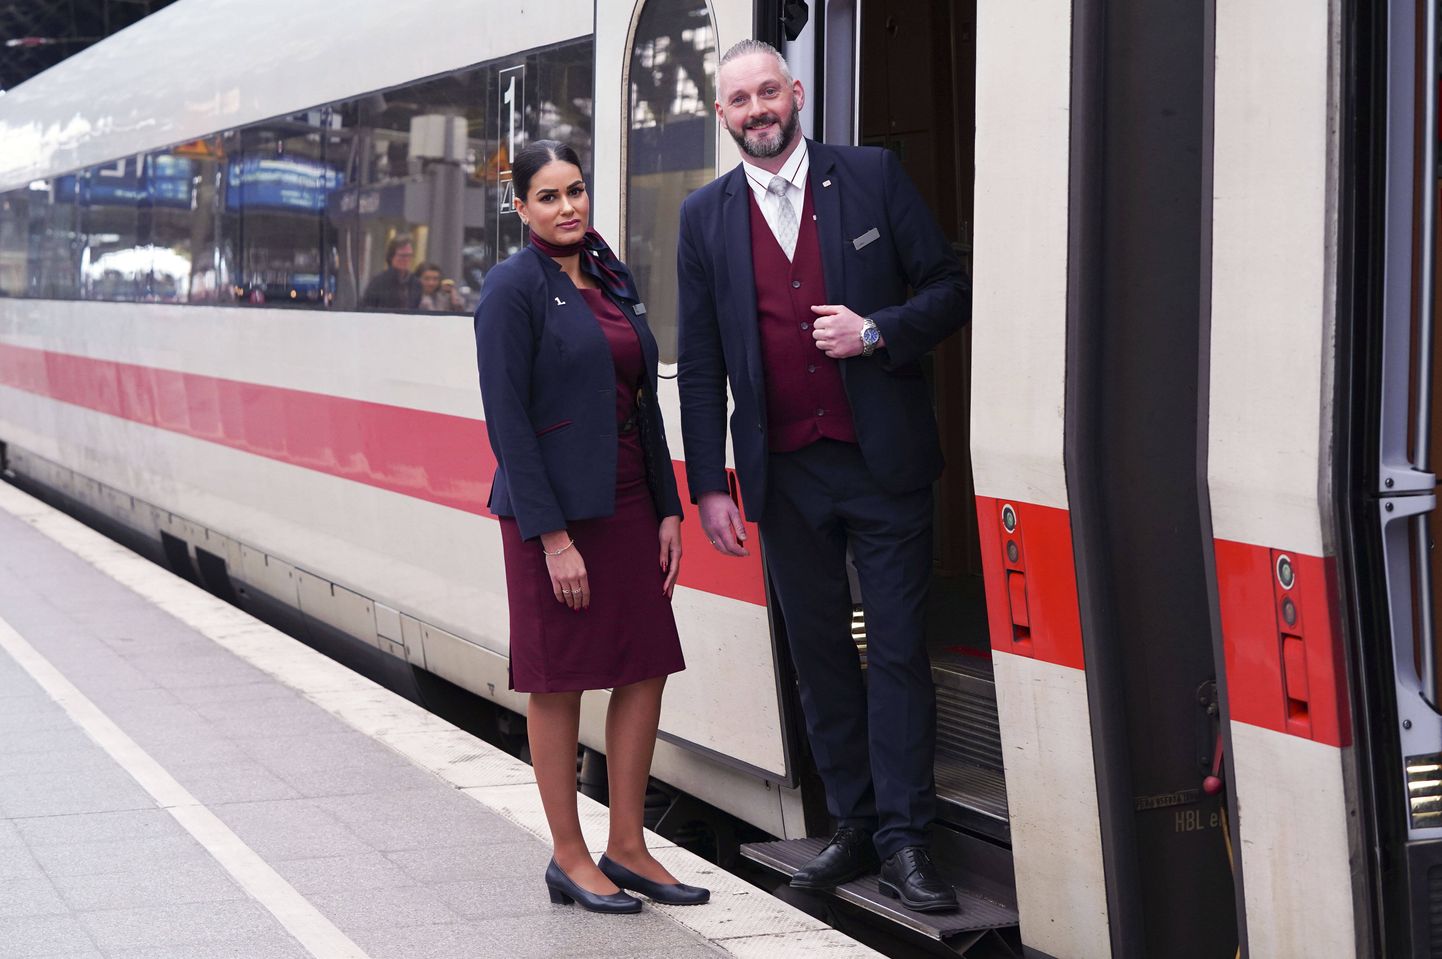 Saksamaa raudteefirma Deutsche Bahn töötajad 2020. aasta märtsis Kölnis esitlemas uusi vormirõivaid.